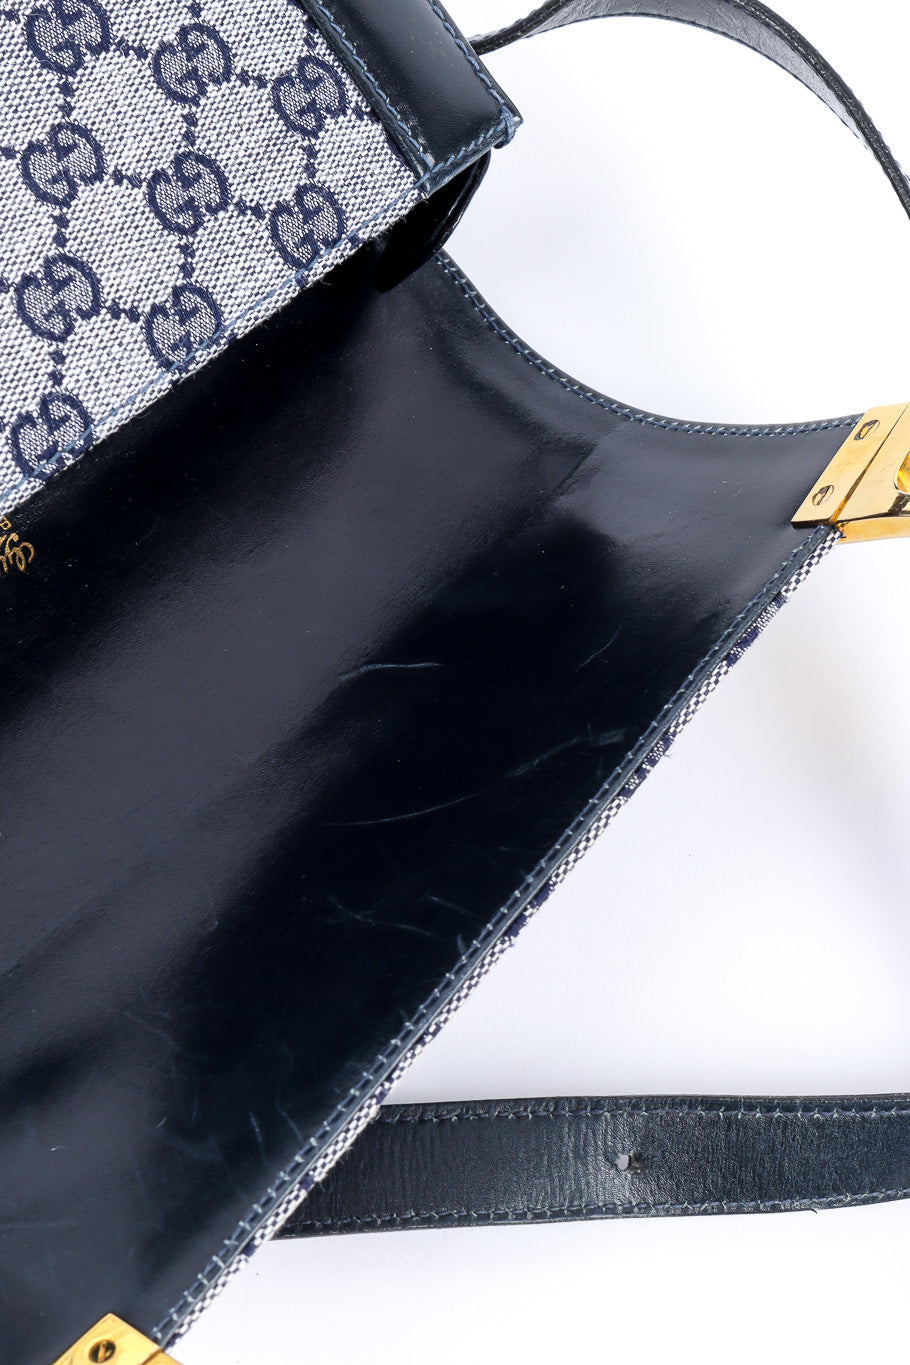 Gucci monogram shoulder bag inside detail @recesla